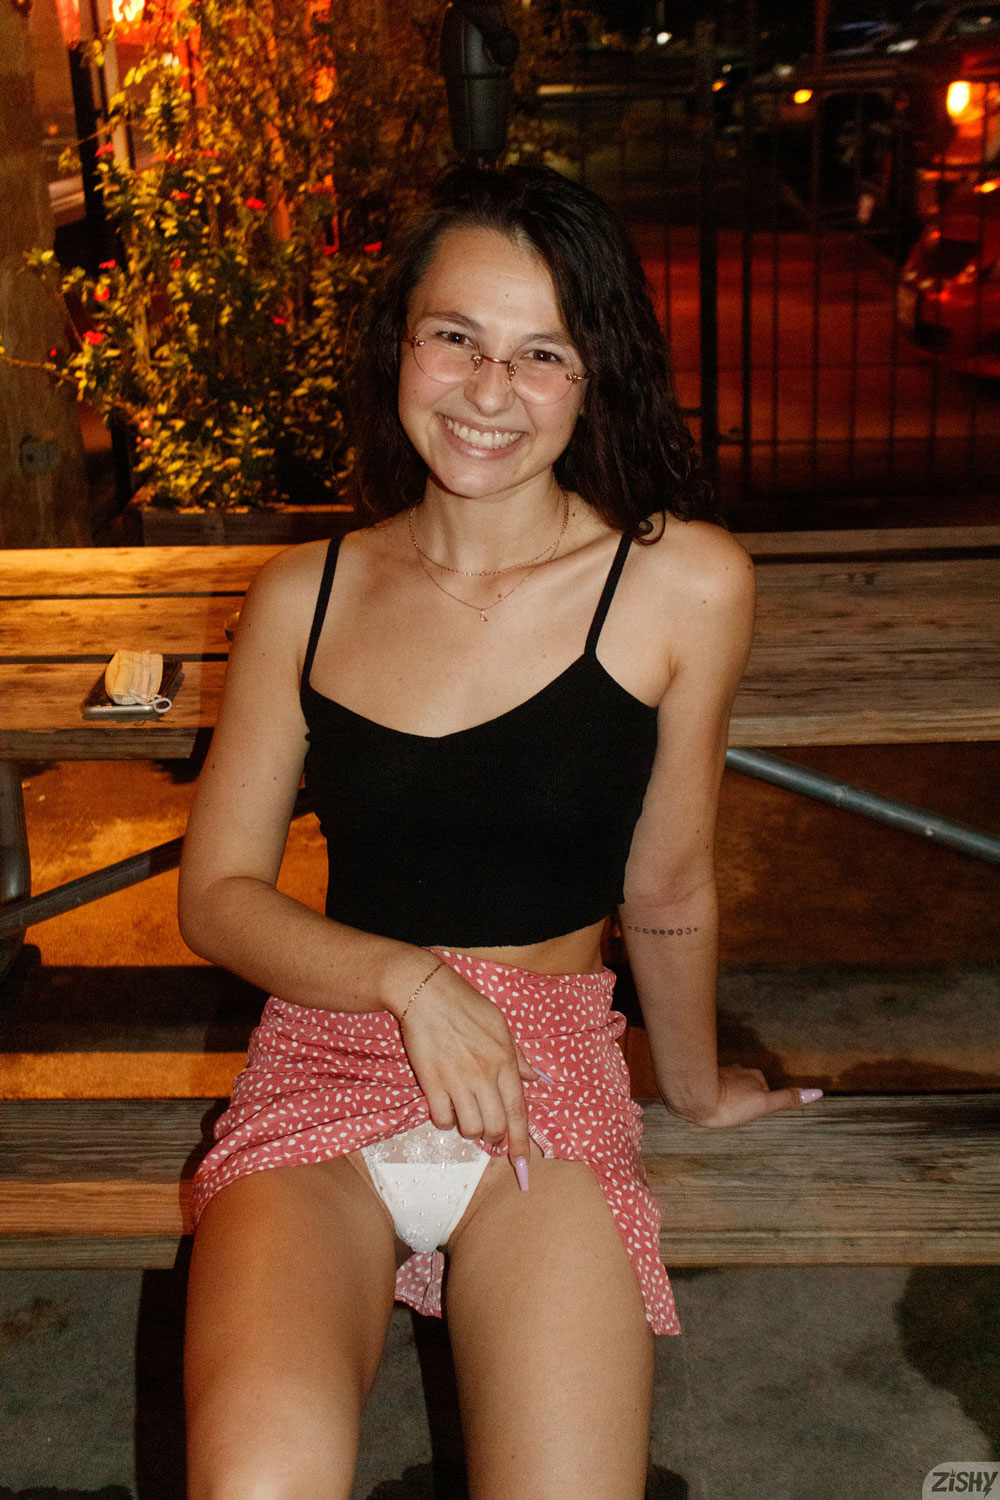 Liz Jordan in a Sexy Miniskirt